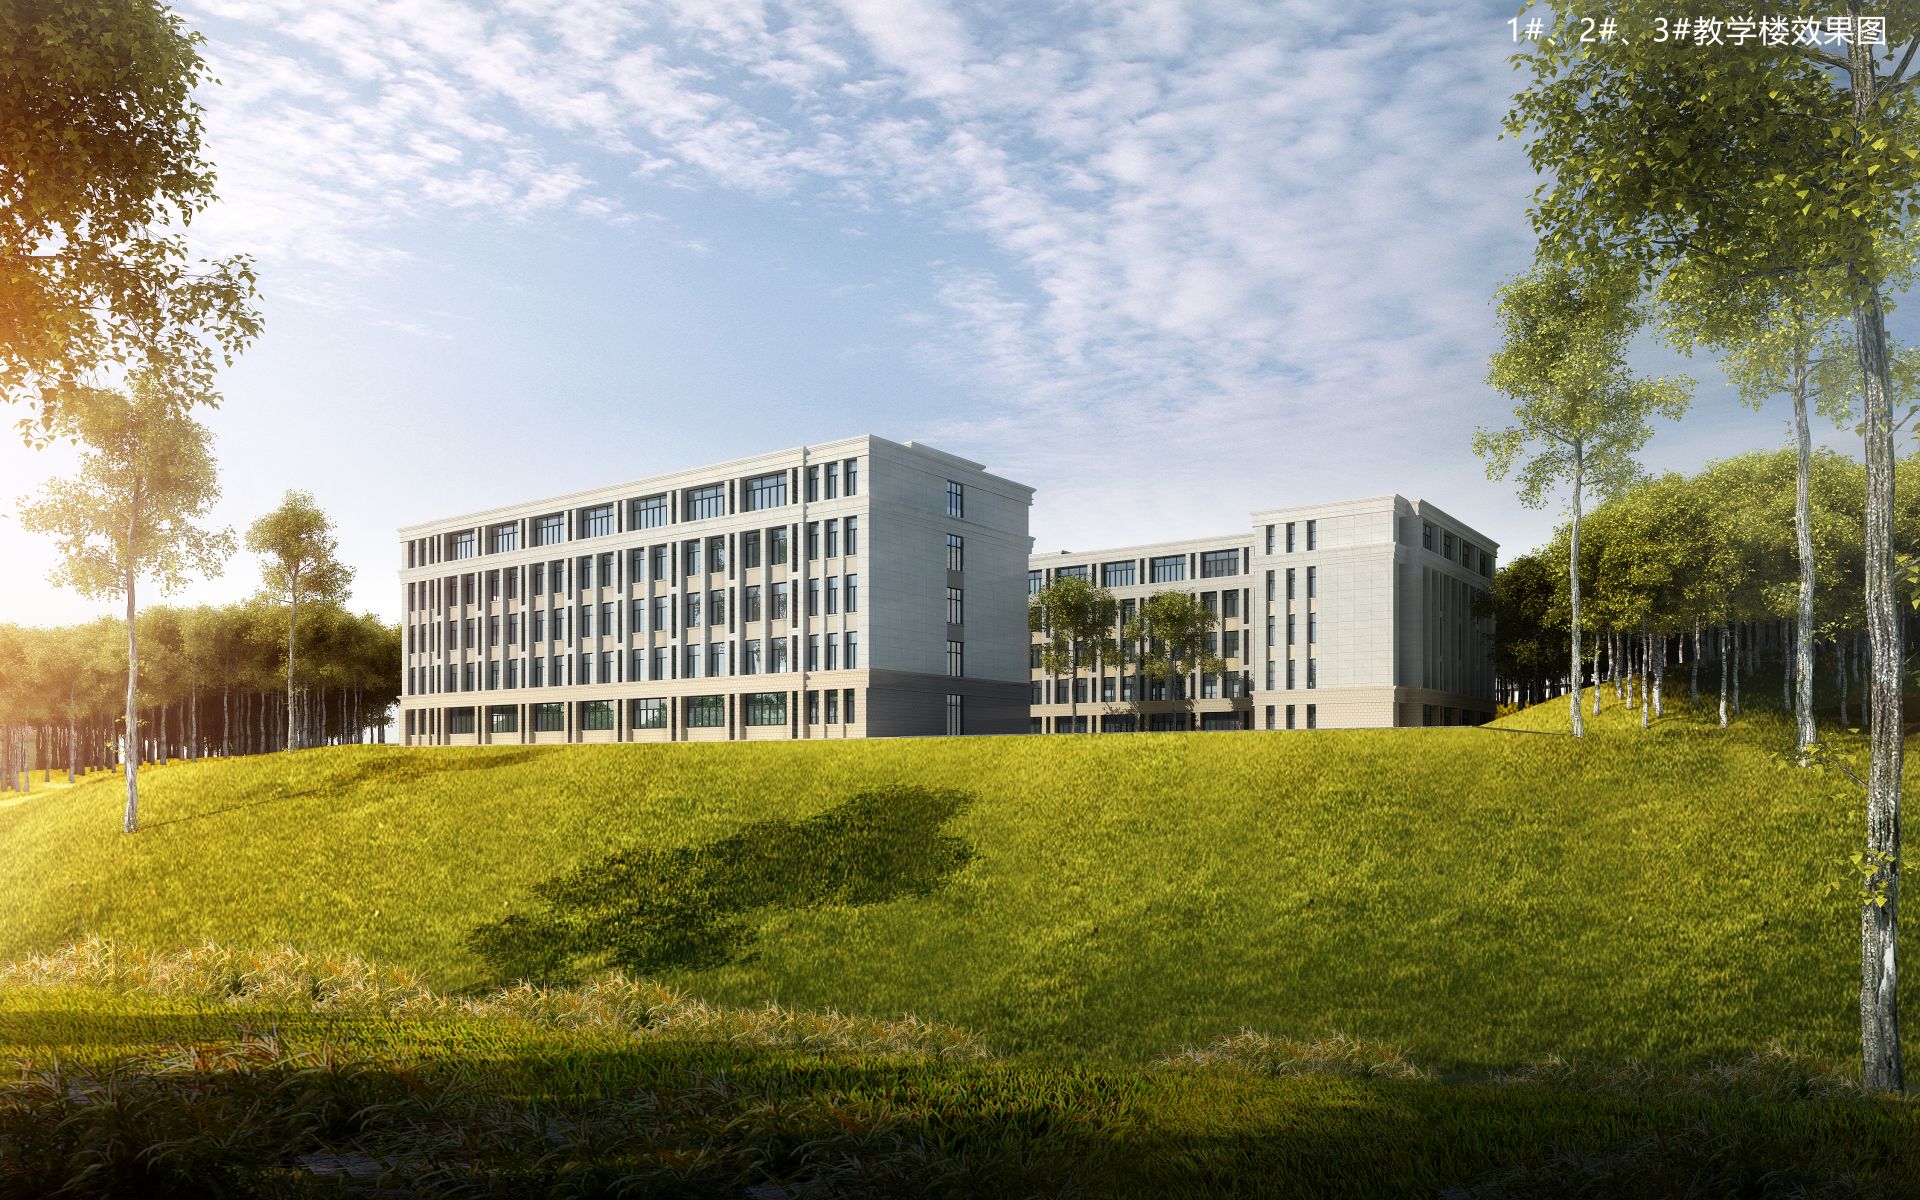 南宁数字科技学院正式开工建设!计划于2021年9月正式开学